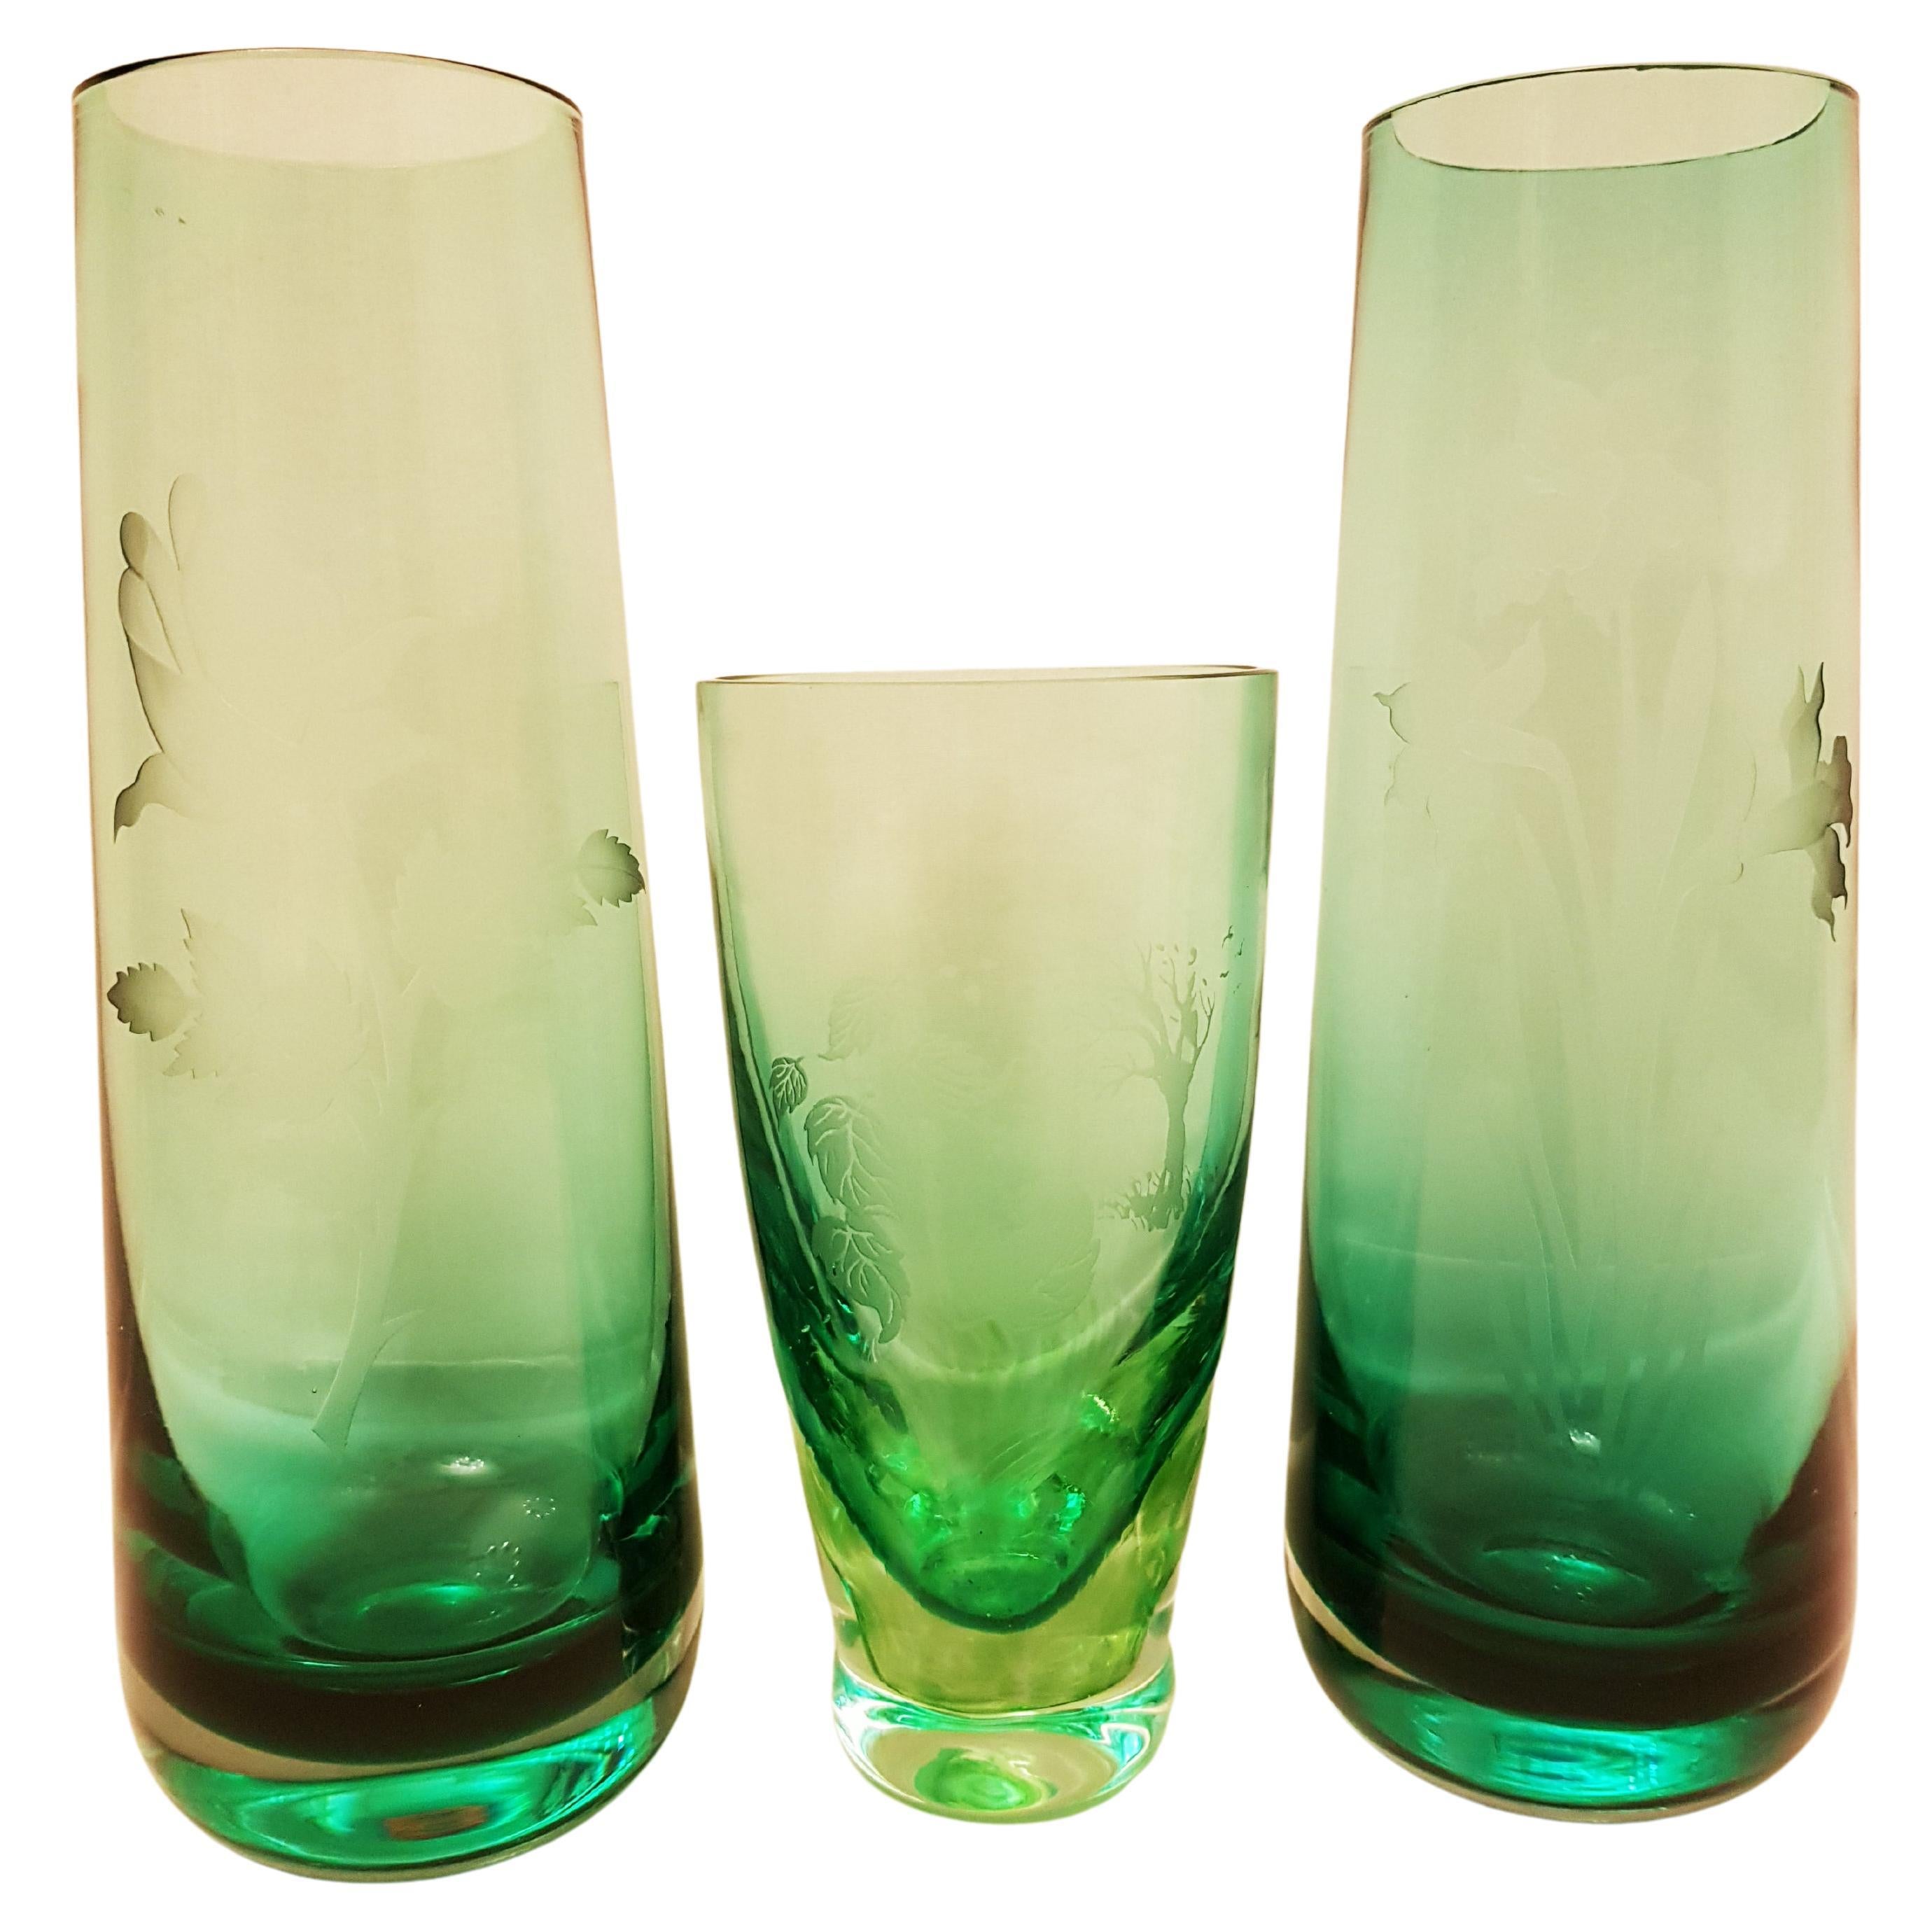 Vitange Caithness Glass Sommerso Engraved Bud Vases For Sale